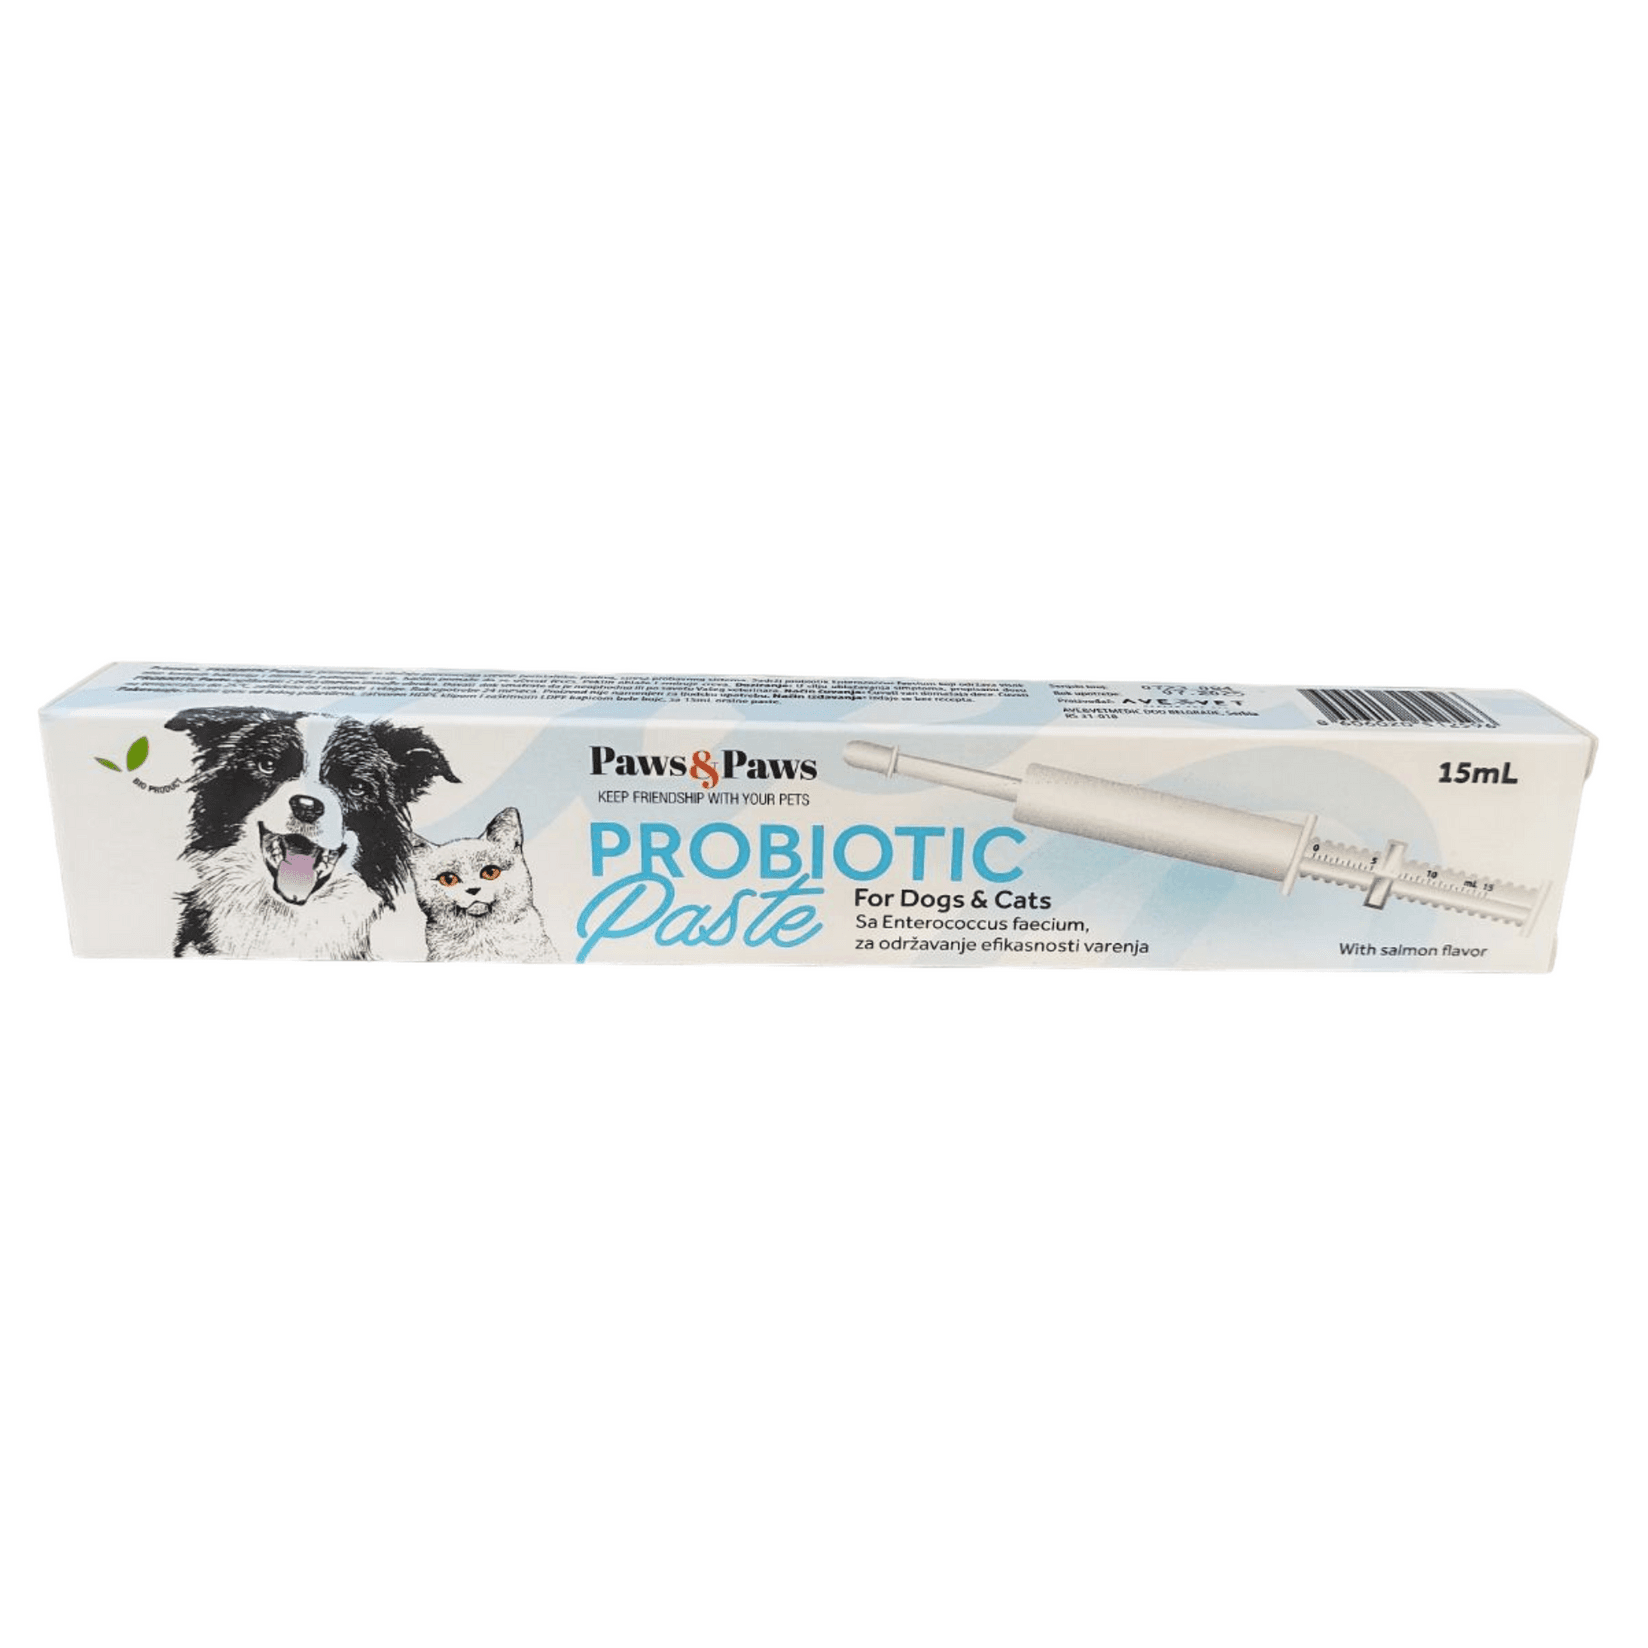 PAWS&PAWS Probiotik pasta za pse i mačke 15ml